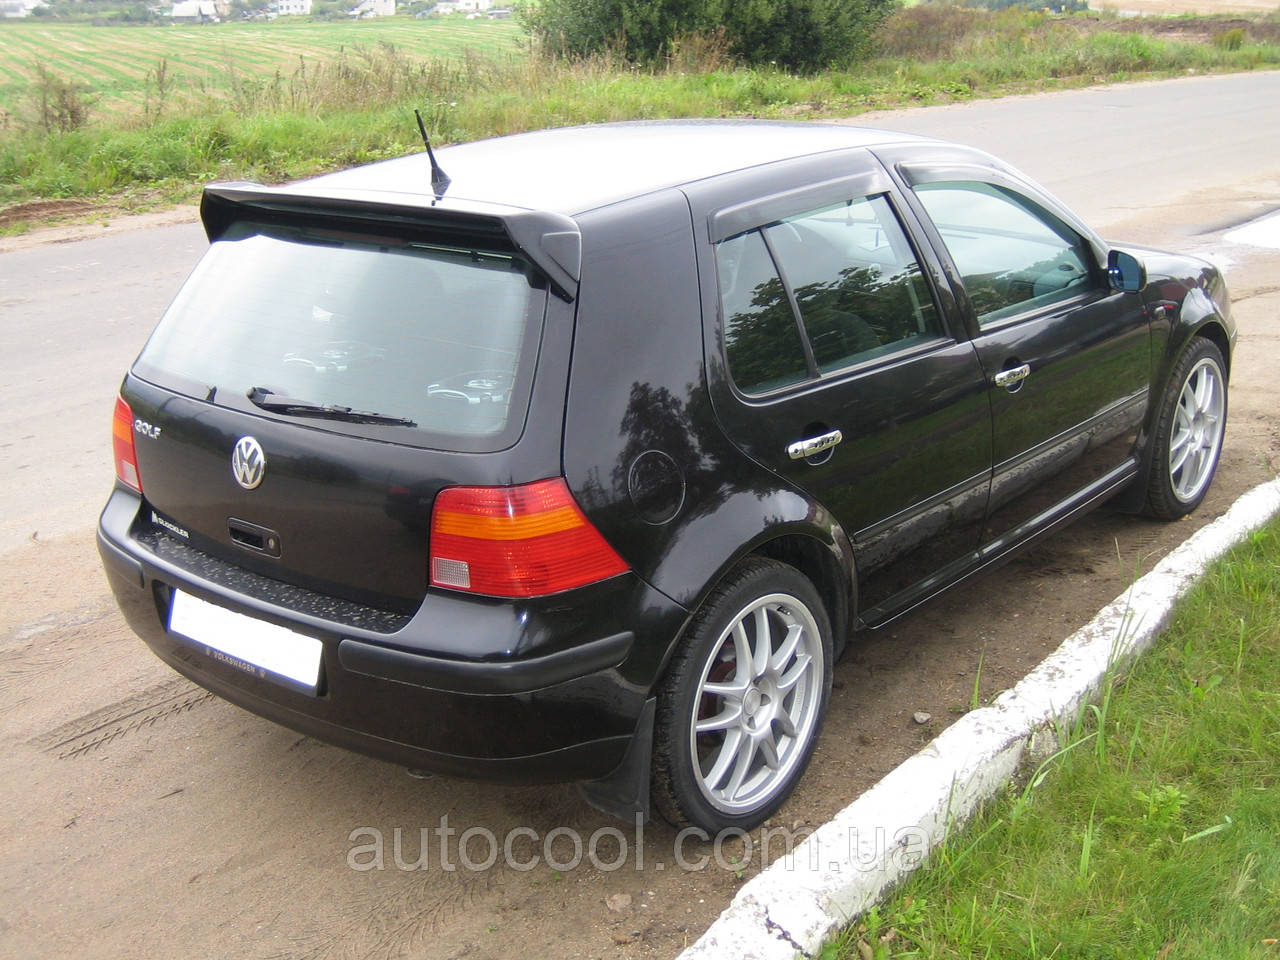 Спойлер крышки багажника Volkswagen Golf 4 1997-2005 г.в.: продажа, цена в  Чернигове. Спойлеры от "AutoCool (Ауто кулл)" - 565845746